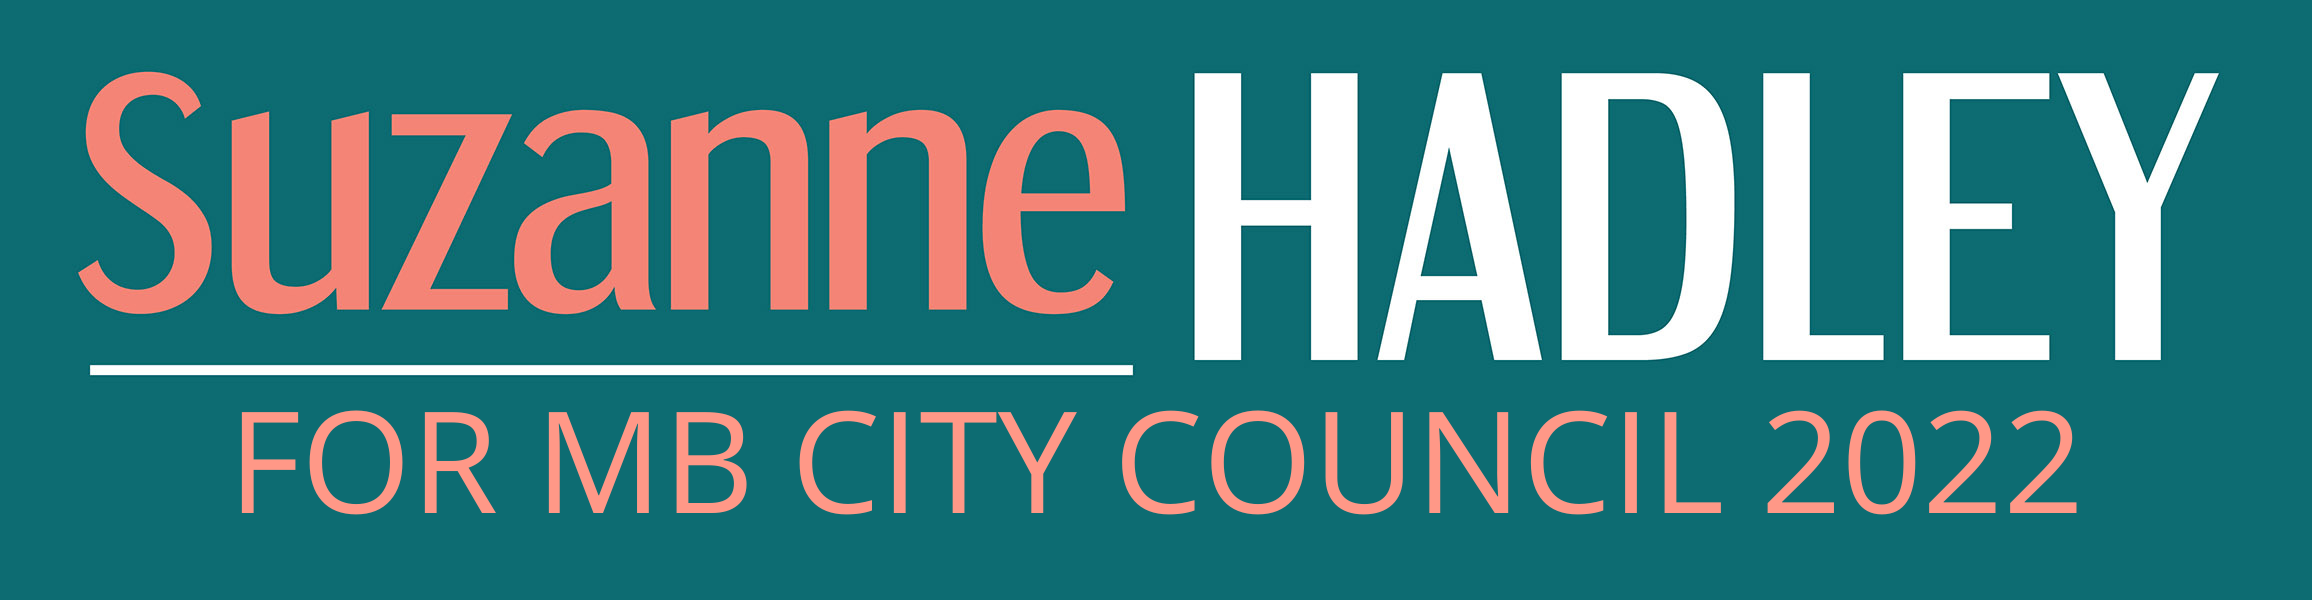 Hadley for Manhattan Beach City Council 2022